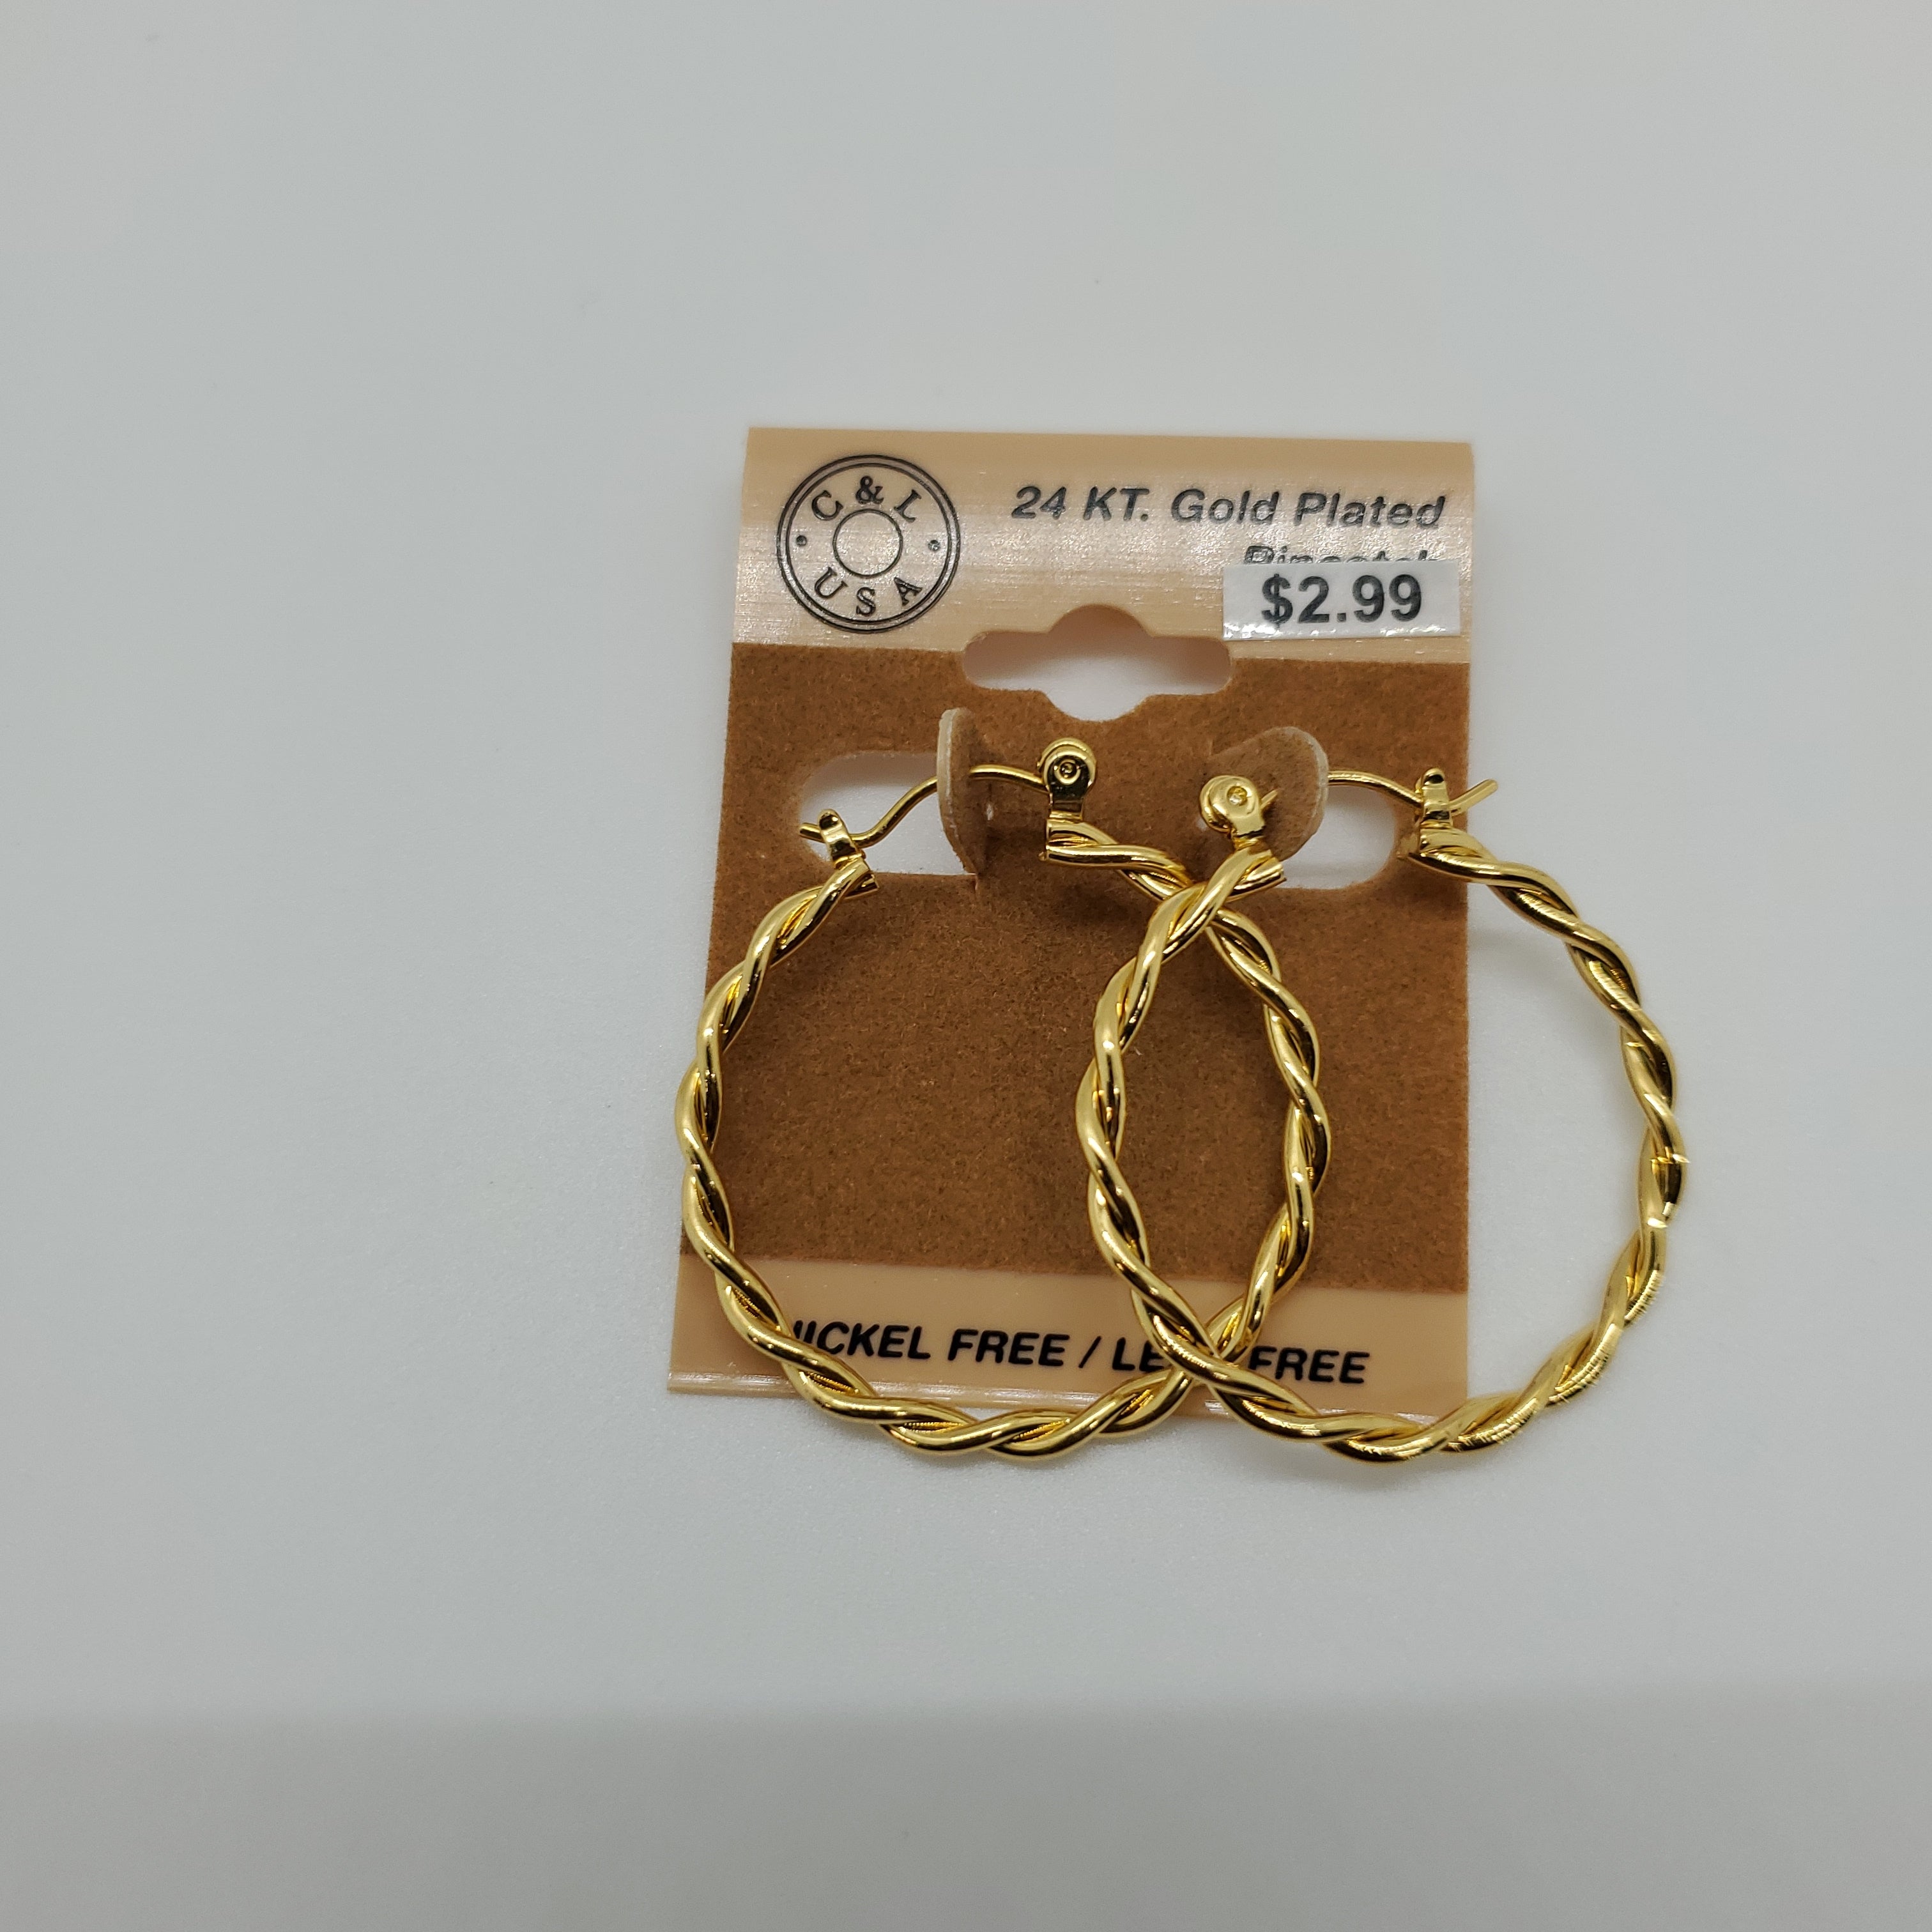 24KT Gold Plated Pincatch Hoop Earrings NPK120 - Beauty Bar & Supply